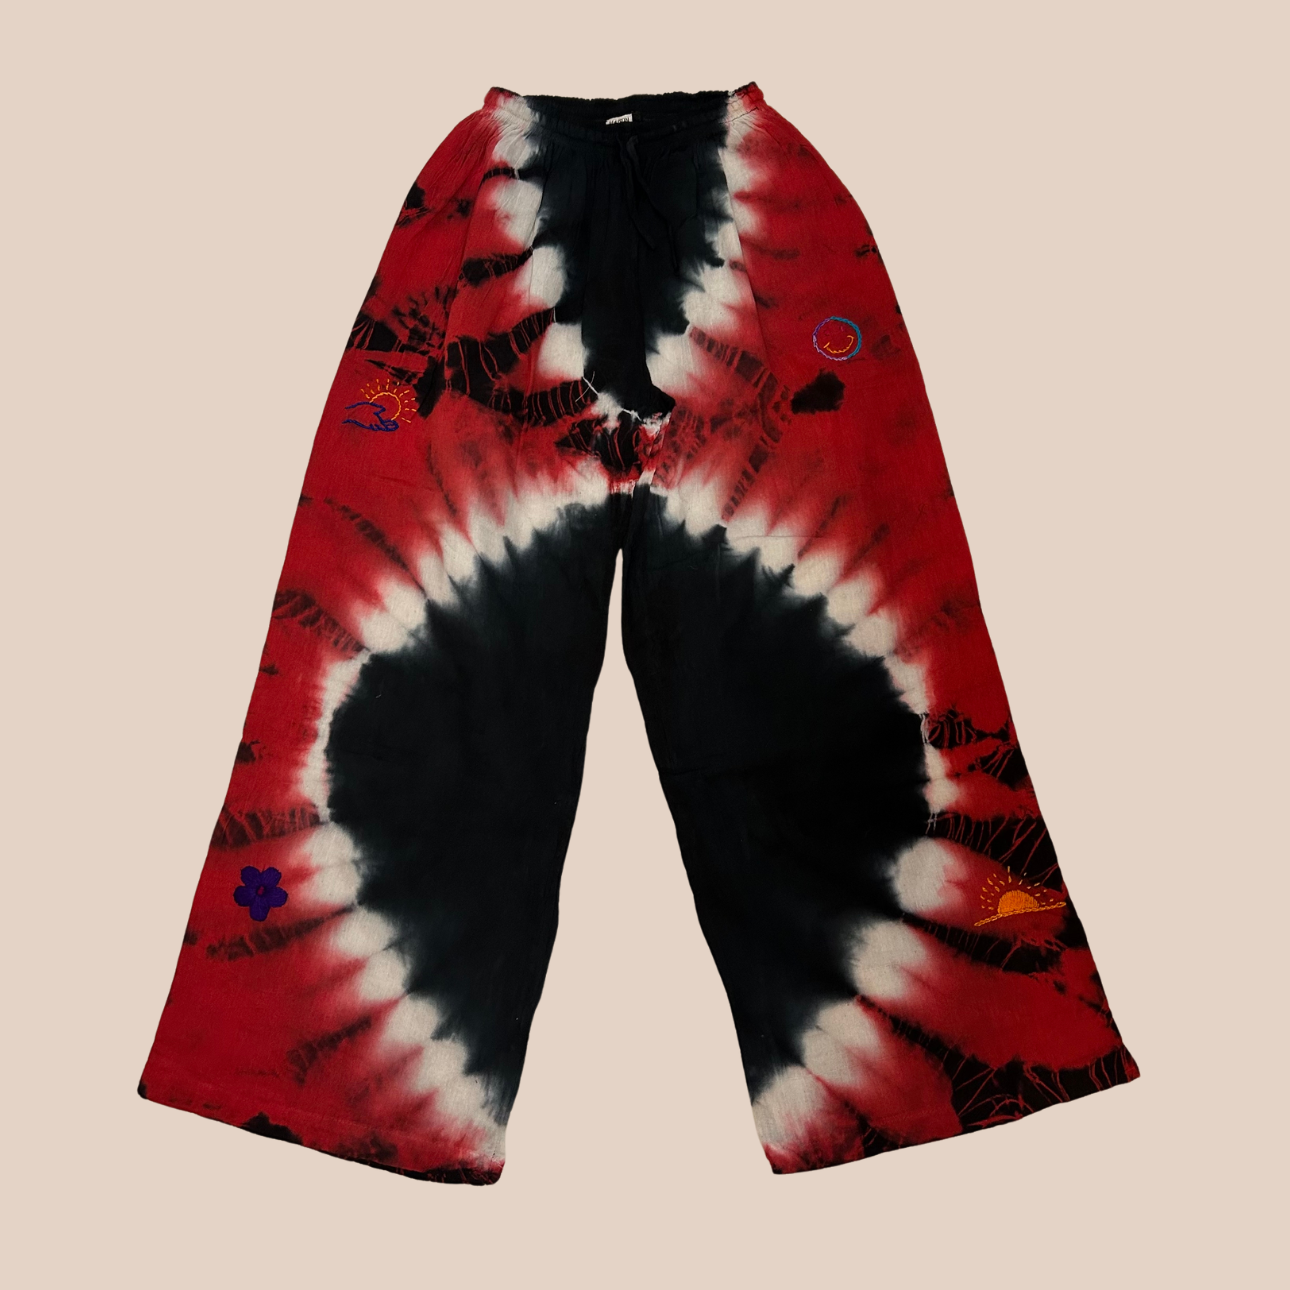 Image du pantalon large tie & dye rouge et noir, un pantalon large aux nuances vibrantes de rouge et de noir, un véritable tourbillon de couleur et de style